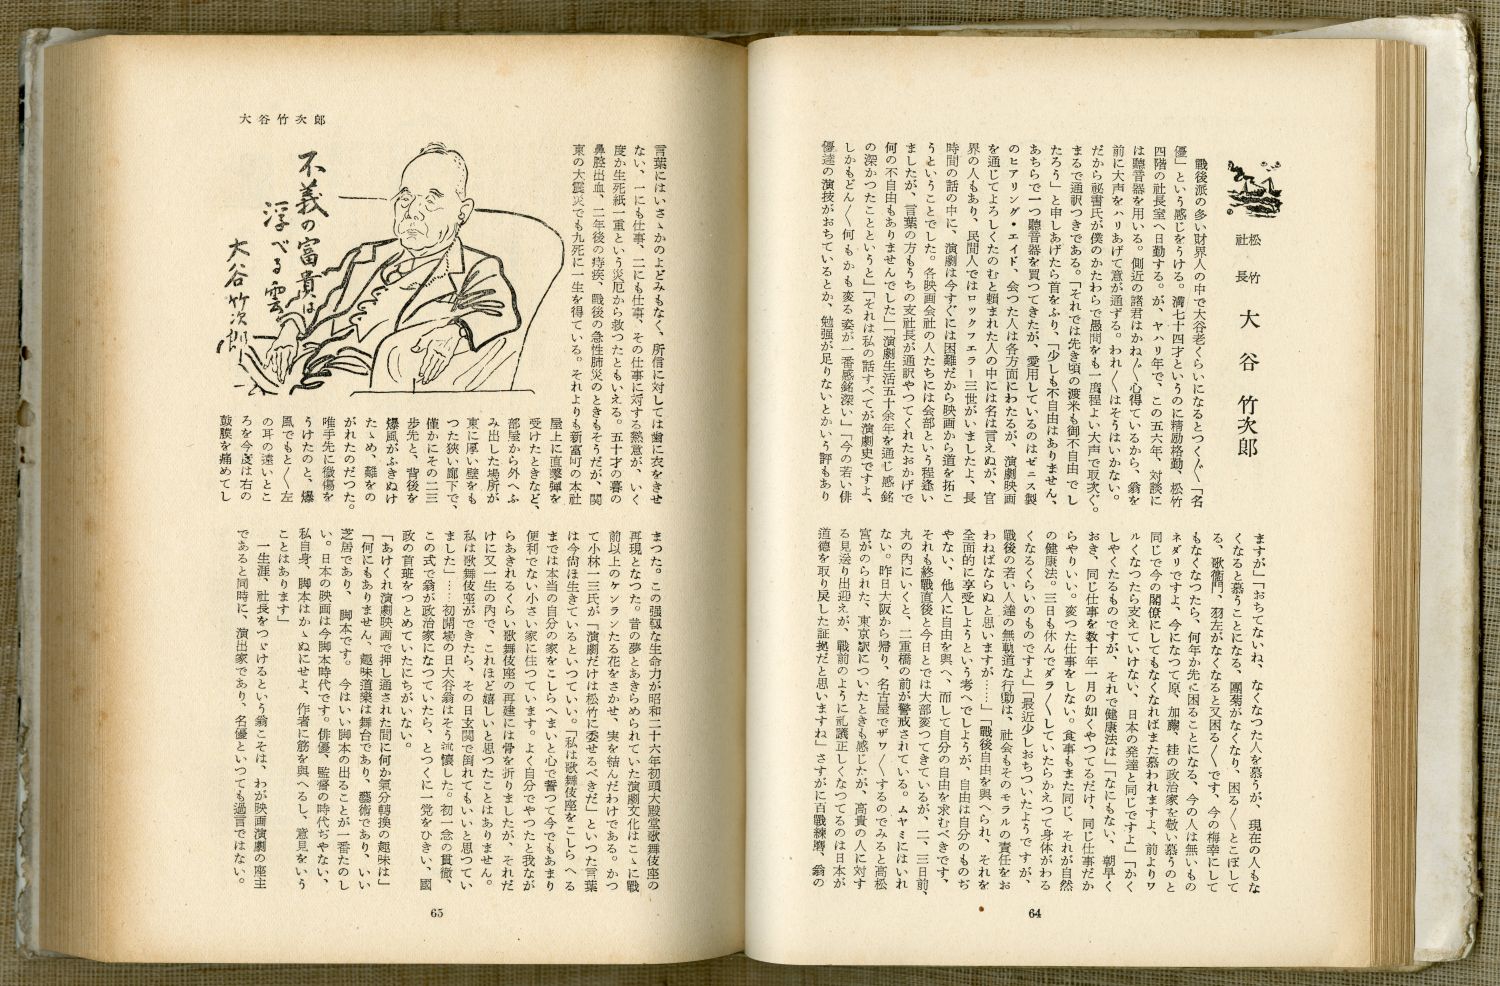 池田さぶろ『財界の顔』（1952年9月15日発行、講談社） のページから